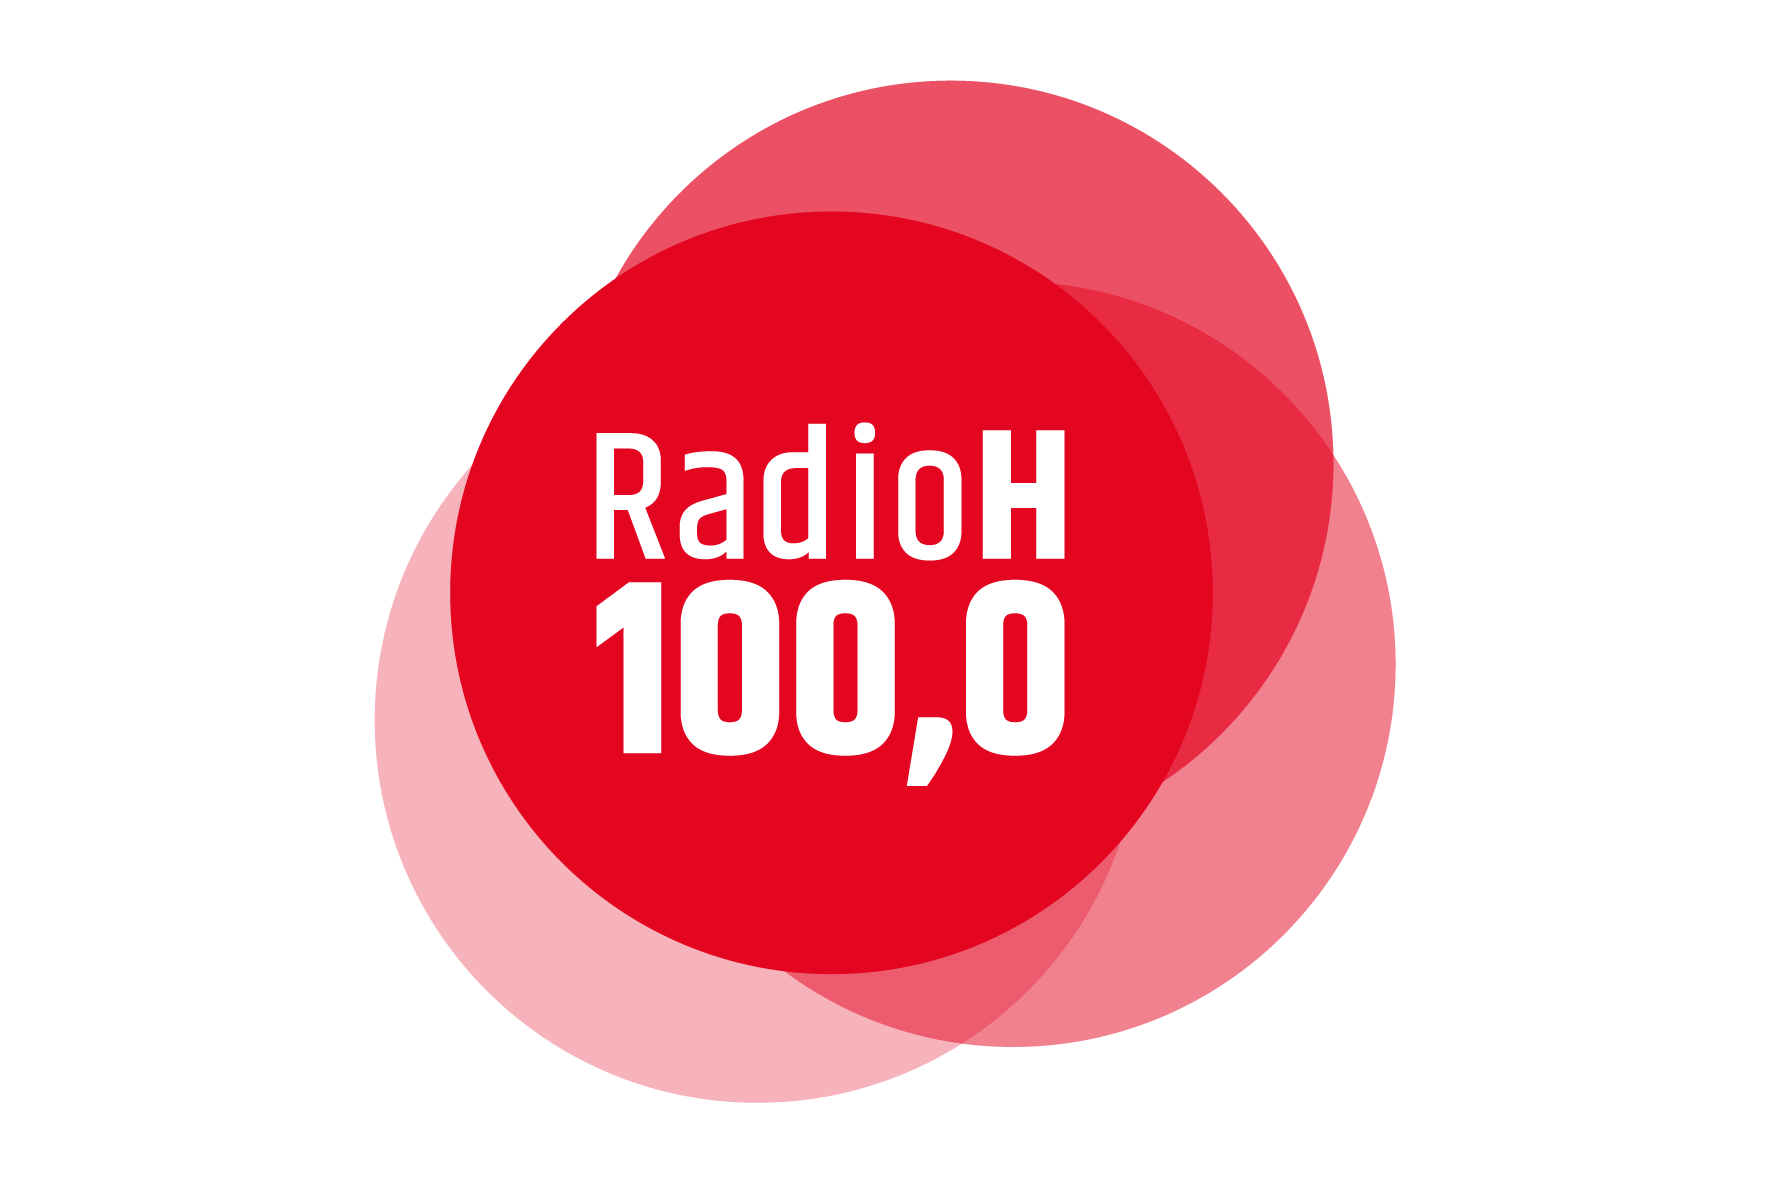 Radio Hannover mit neuem Corporate Design